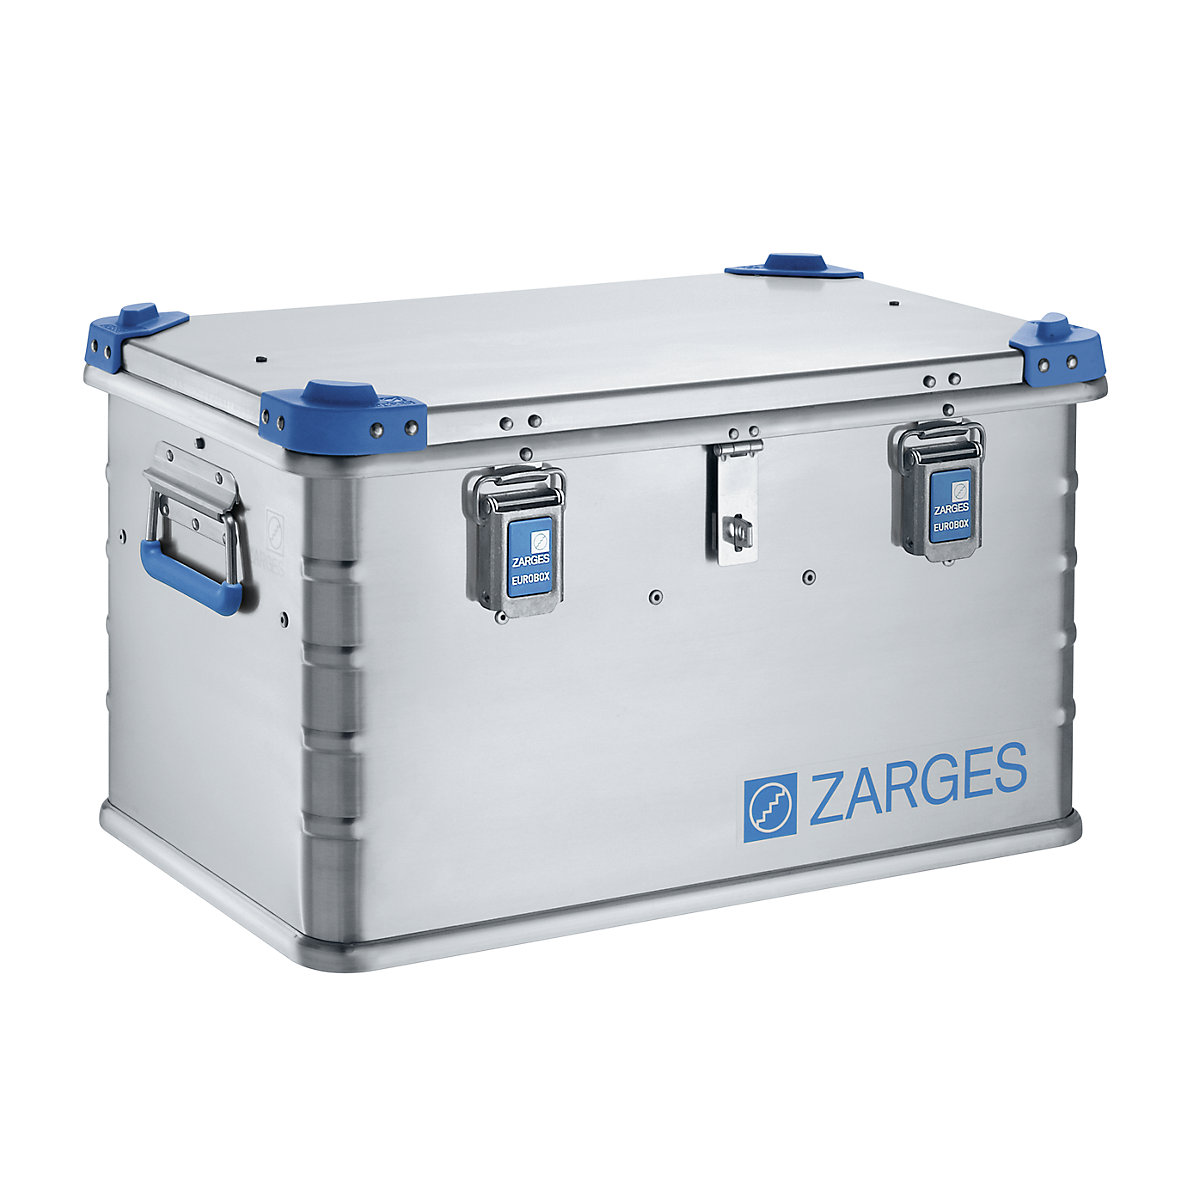 Euro-gereedschapsbox van aluminium – ZARGES